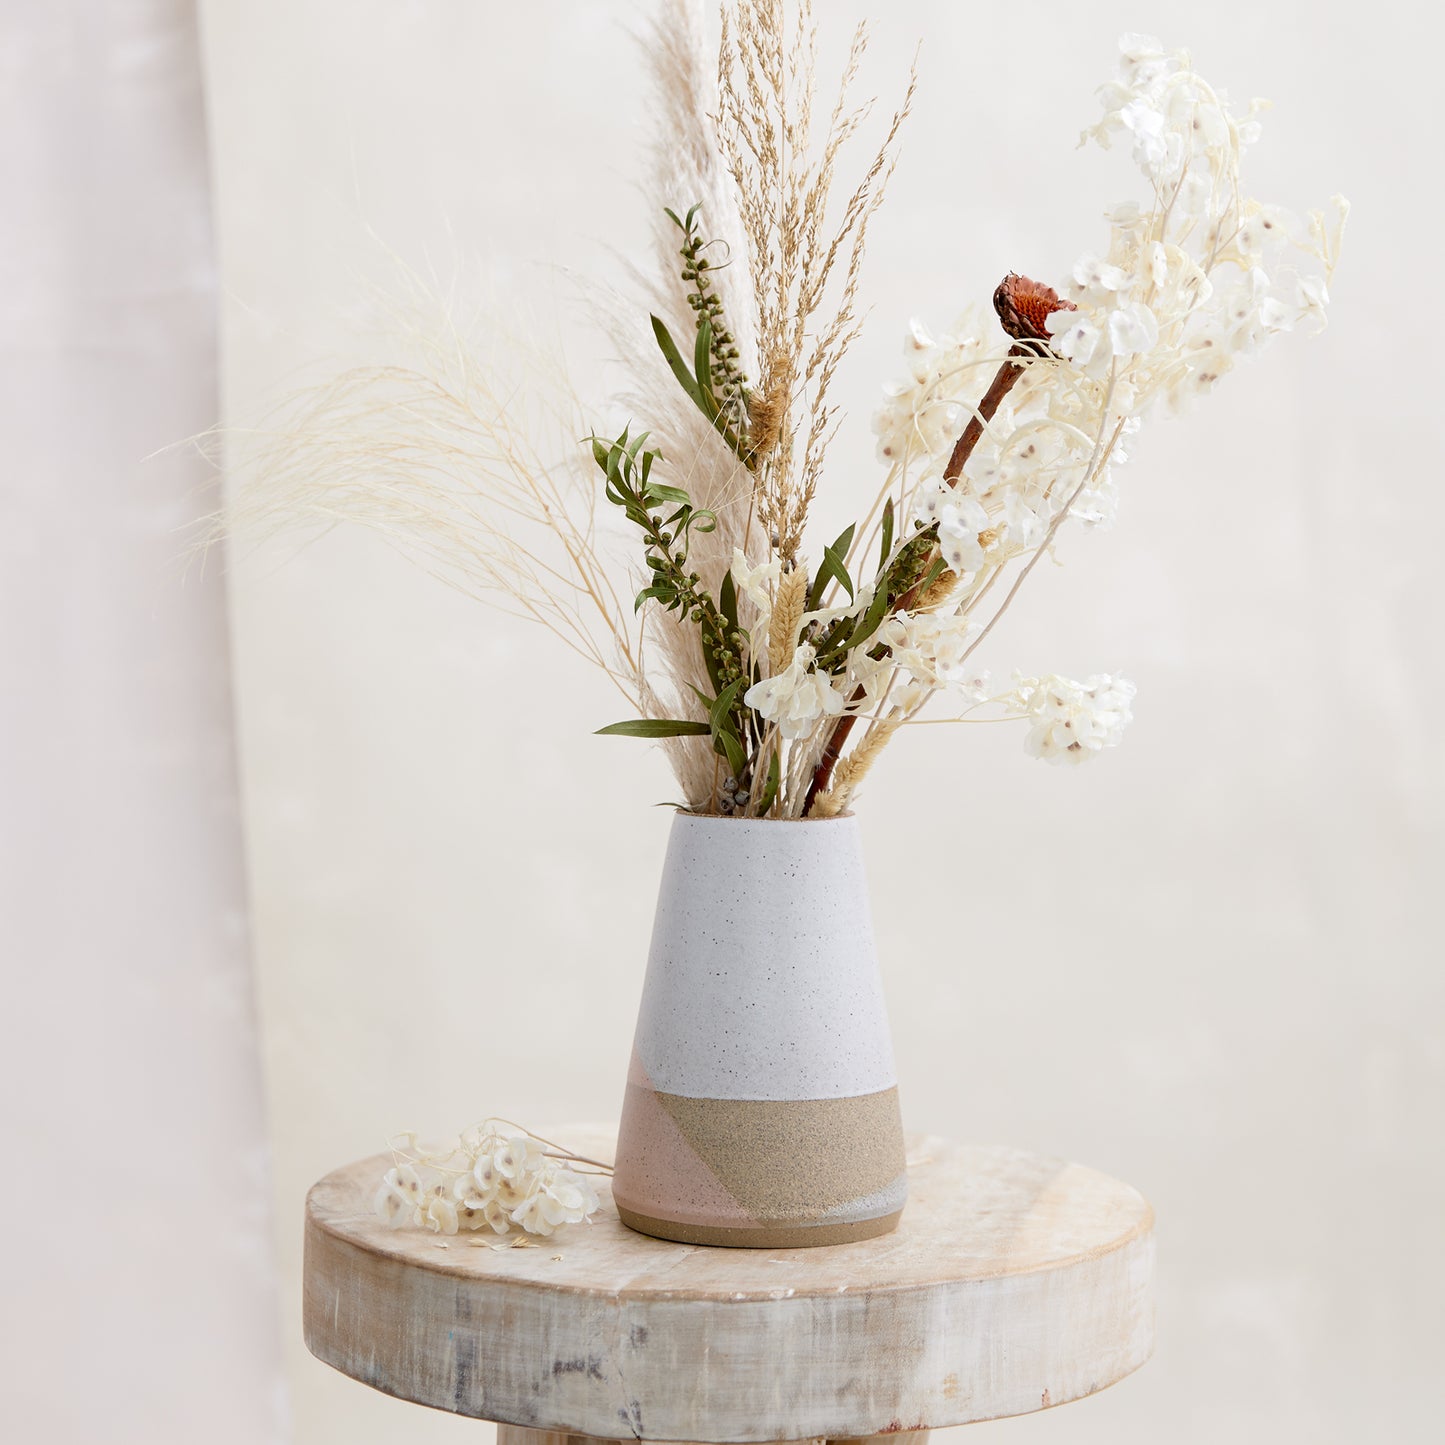 Tidal Handmade Ceramic Taper Vase - Grey and Peach